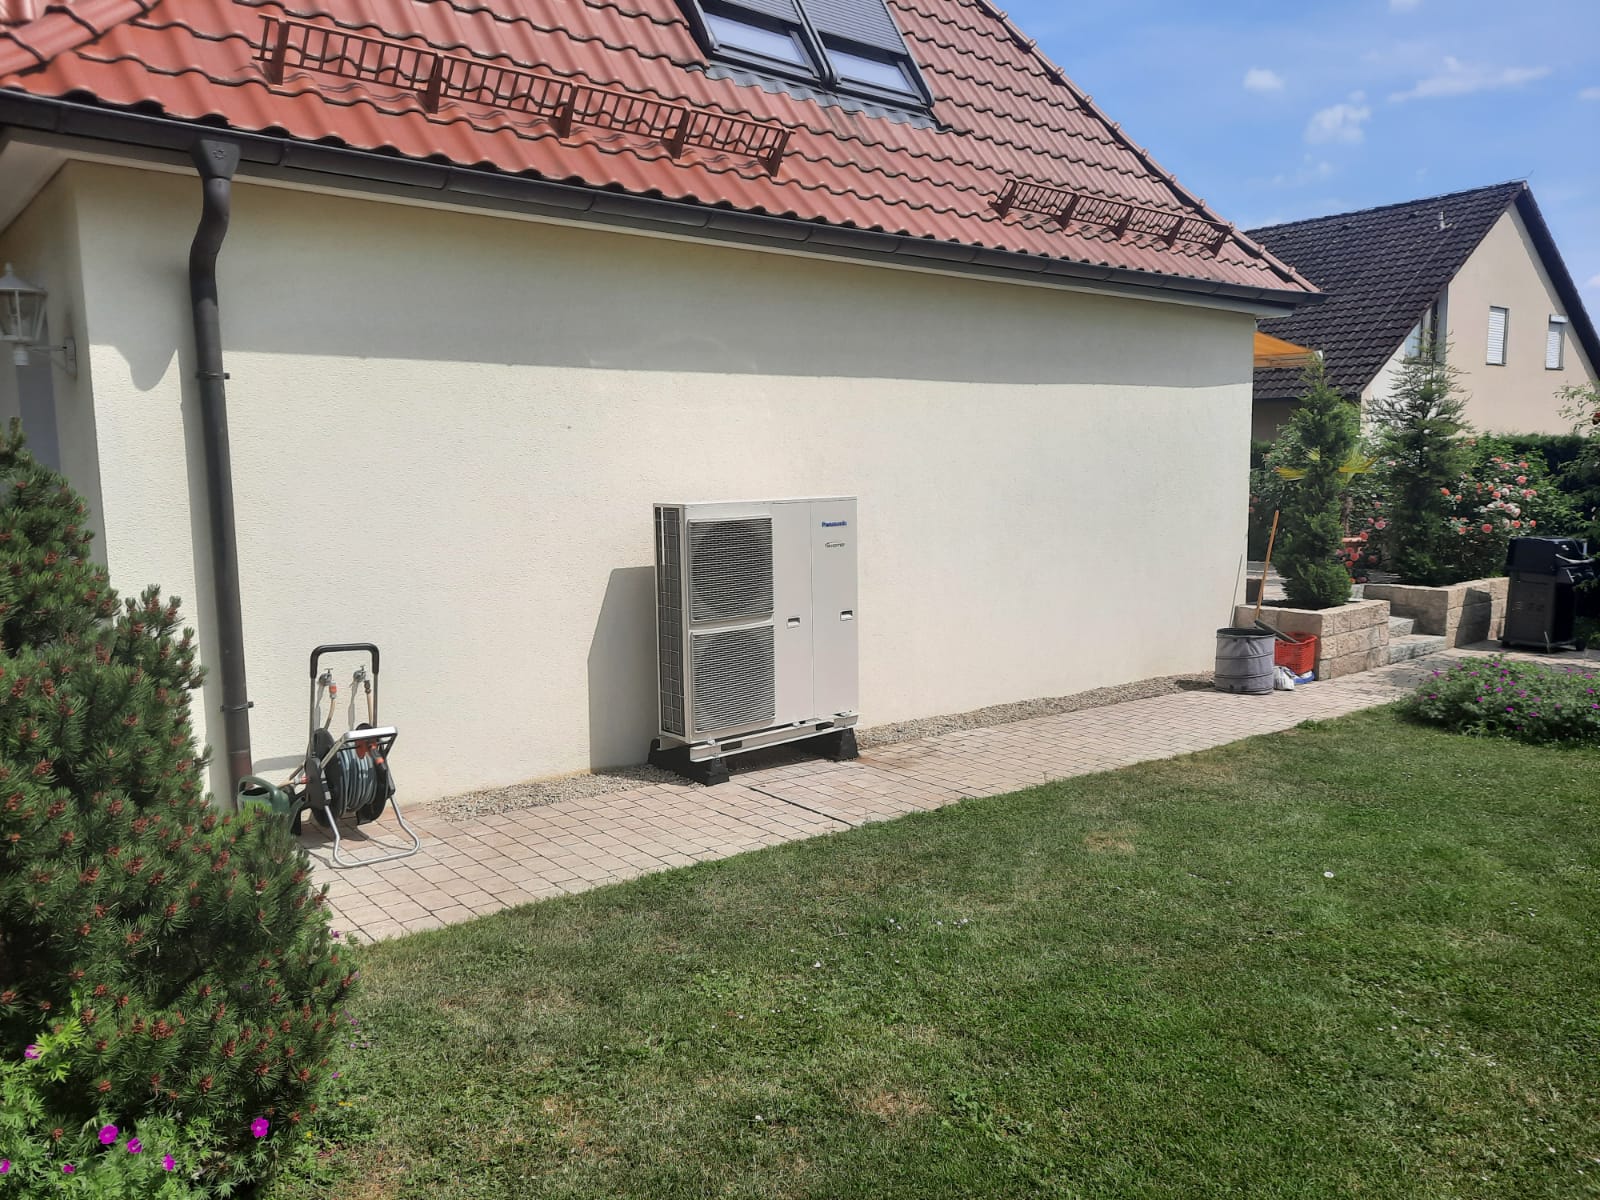 Wärmepumpe Hybridsystem für Erlangen Forchheim Eckental